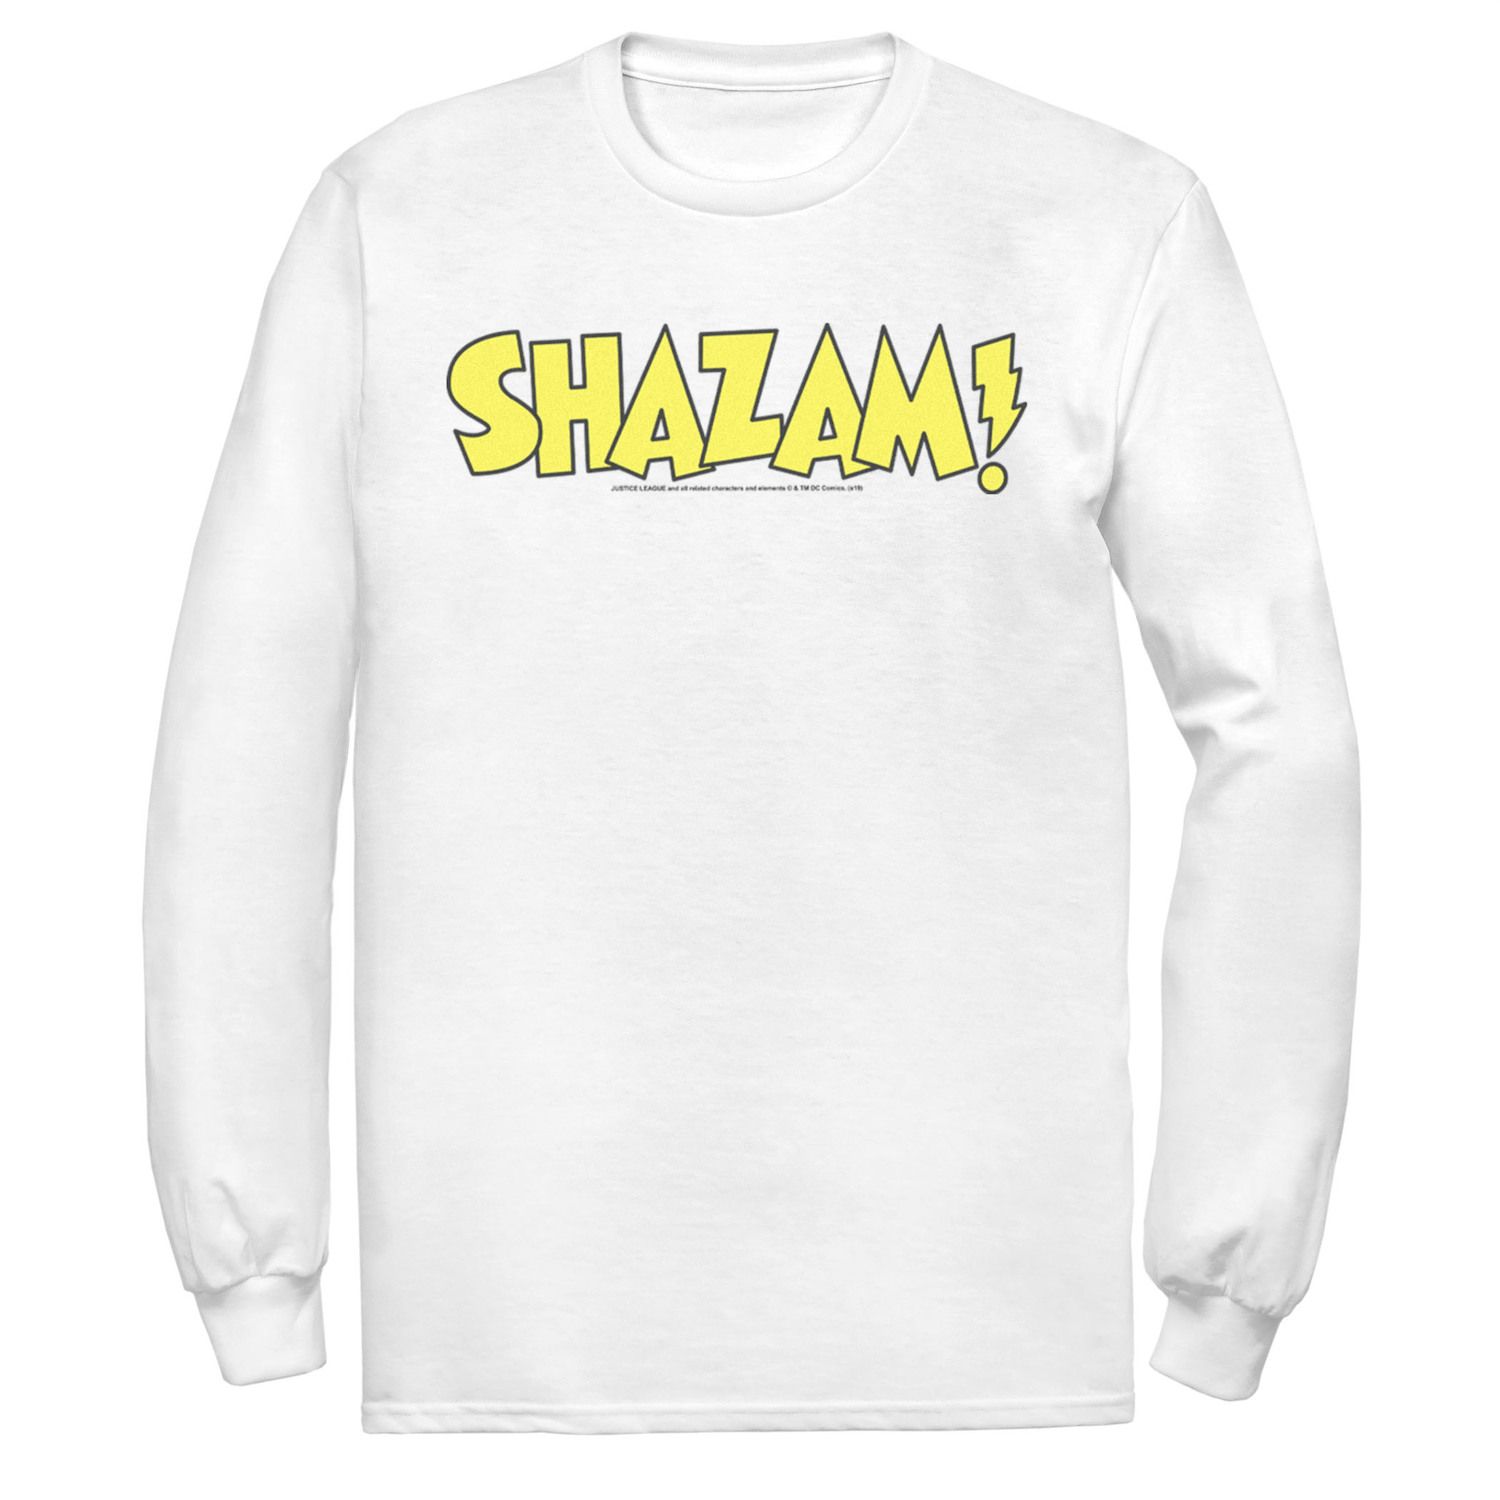 Мужская футболка с жирным текстовым логотипом DC Comics Shazam